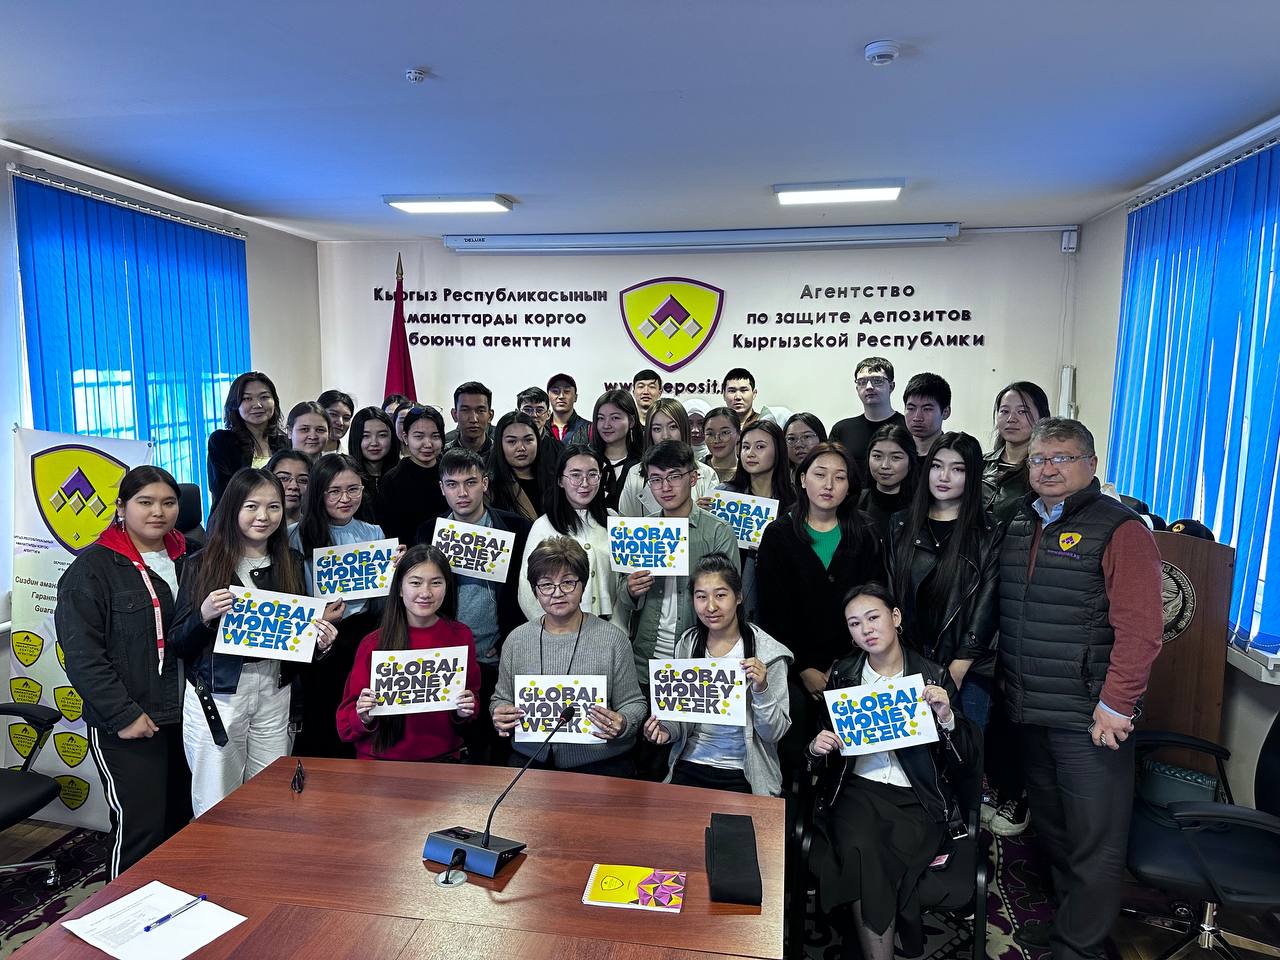 23 марта 2023 года в Агентстве по защите депозитов Кыргызской Республики прошел день открытых дверей и лекция о системе защиты депозитов для студентов  университета АДАМ  в рамках Глобальной недели денег-2023